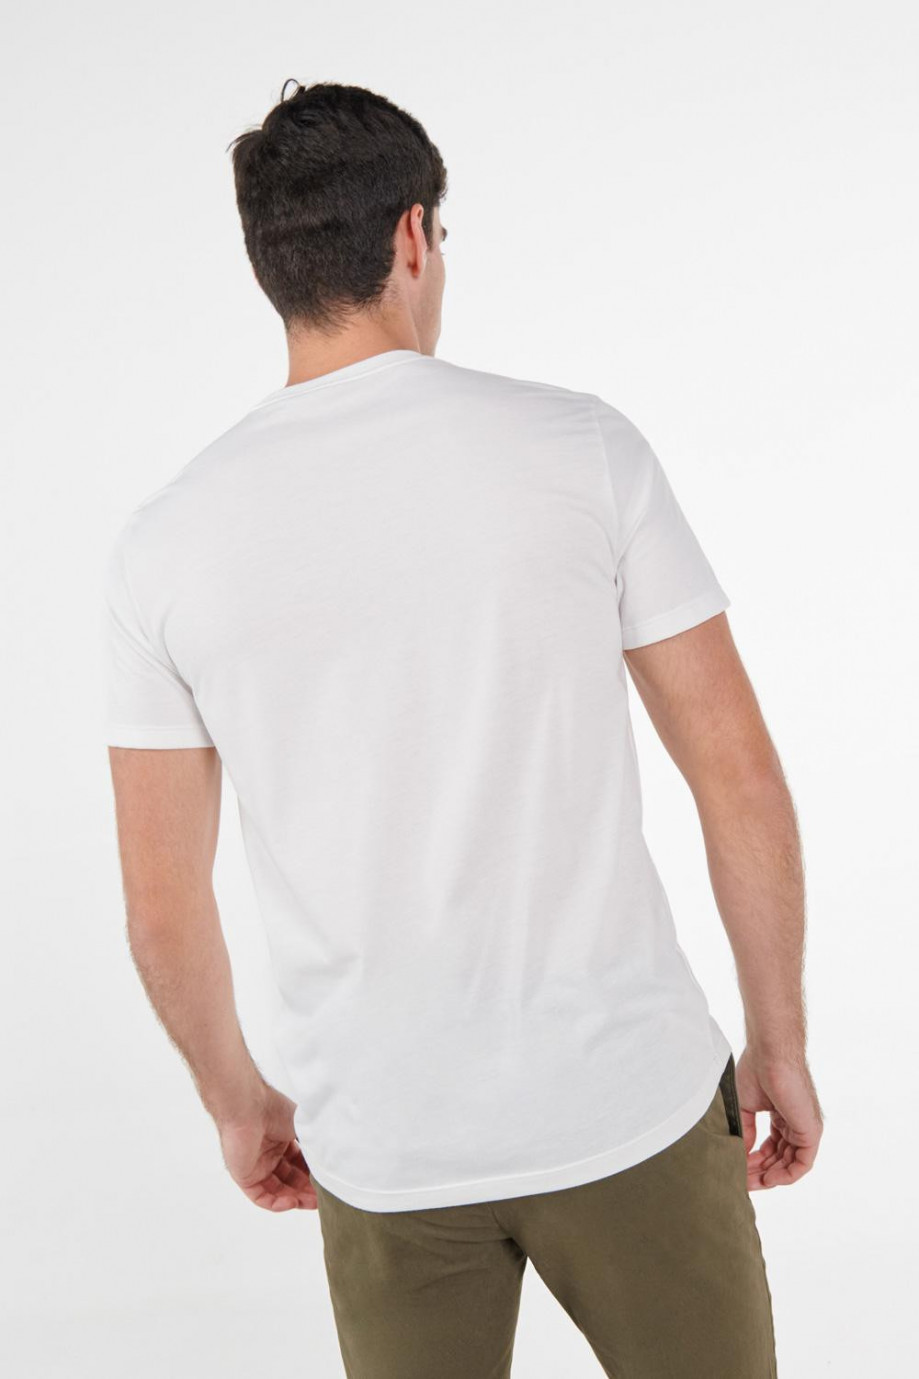 Camiseta crema clara con estampado deportivo y manga corta